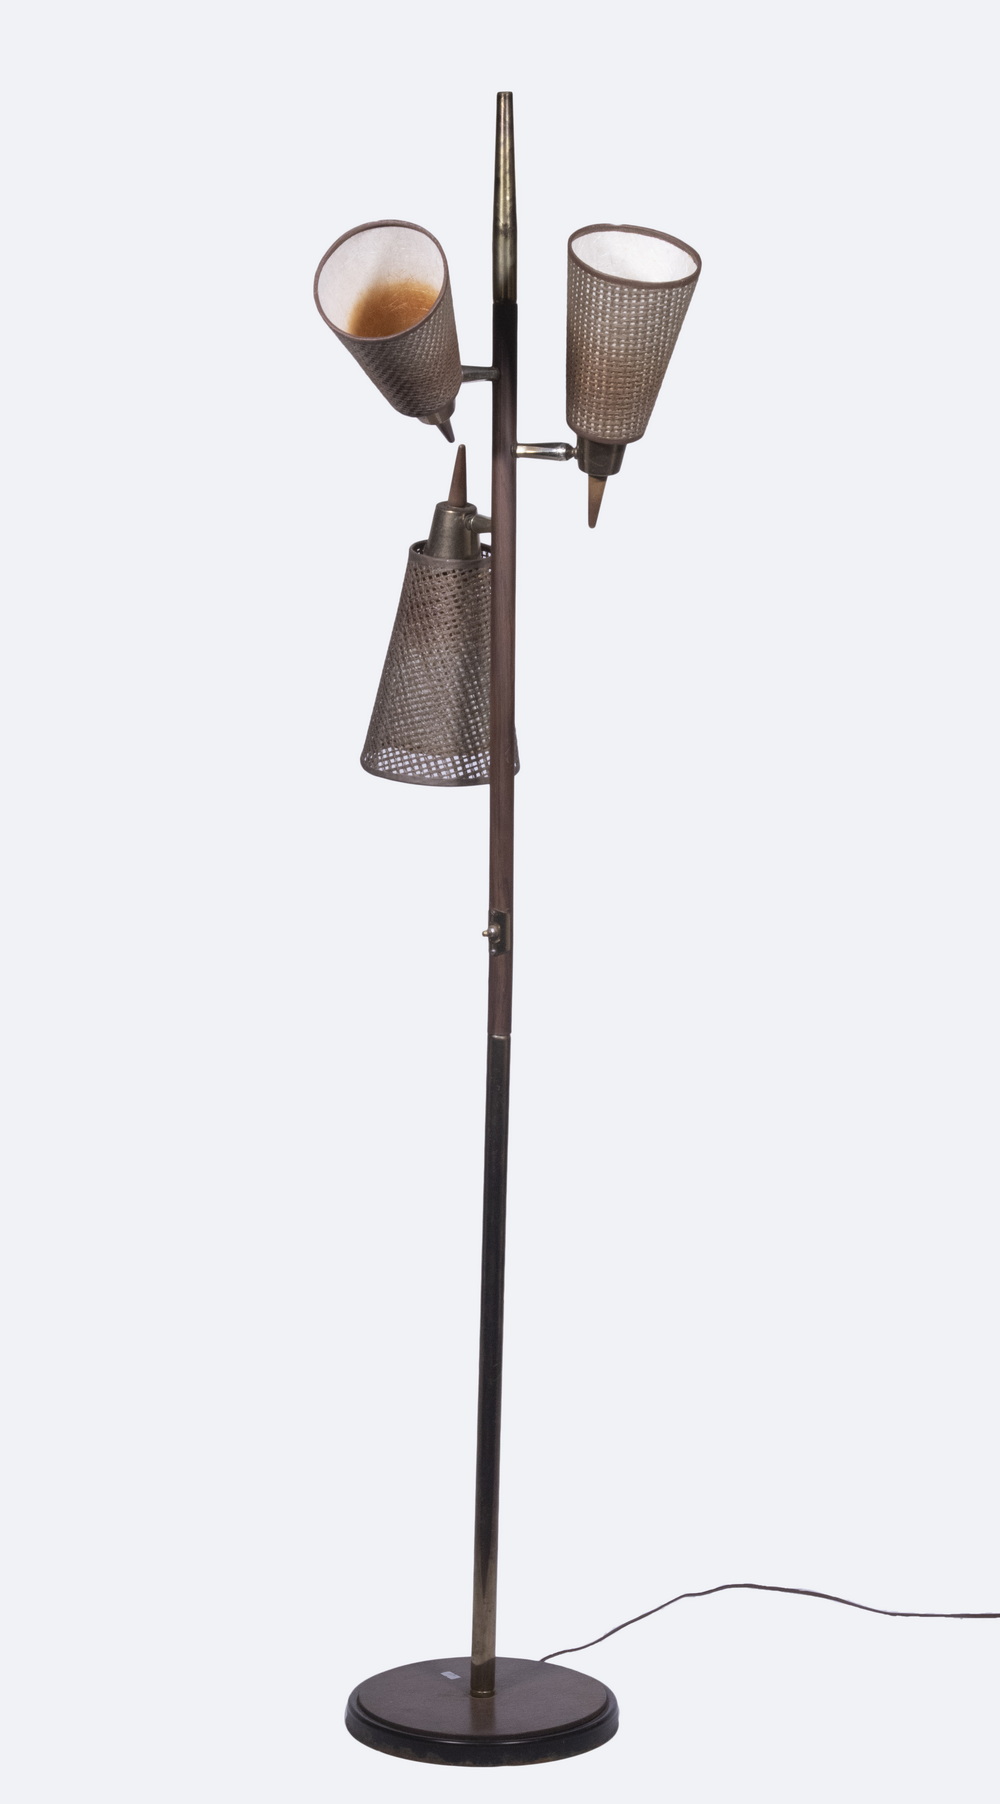 VINTAGE MIDCENTURY FLOOR LAMP Modernist 30243b